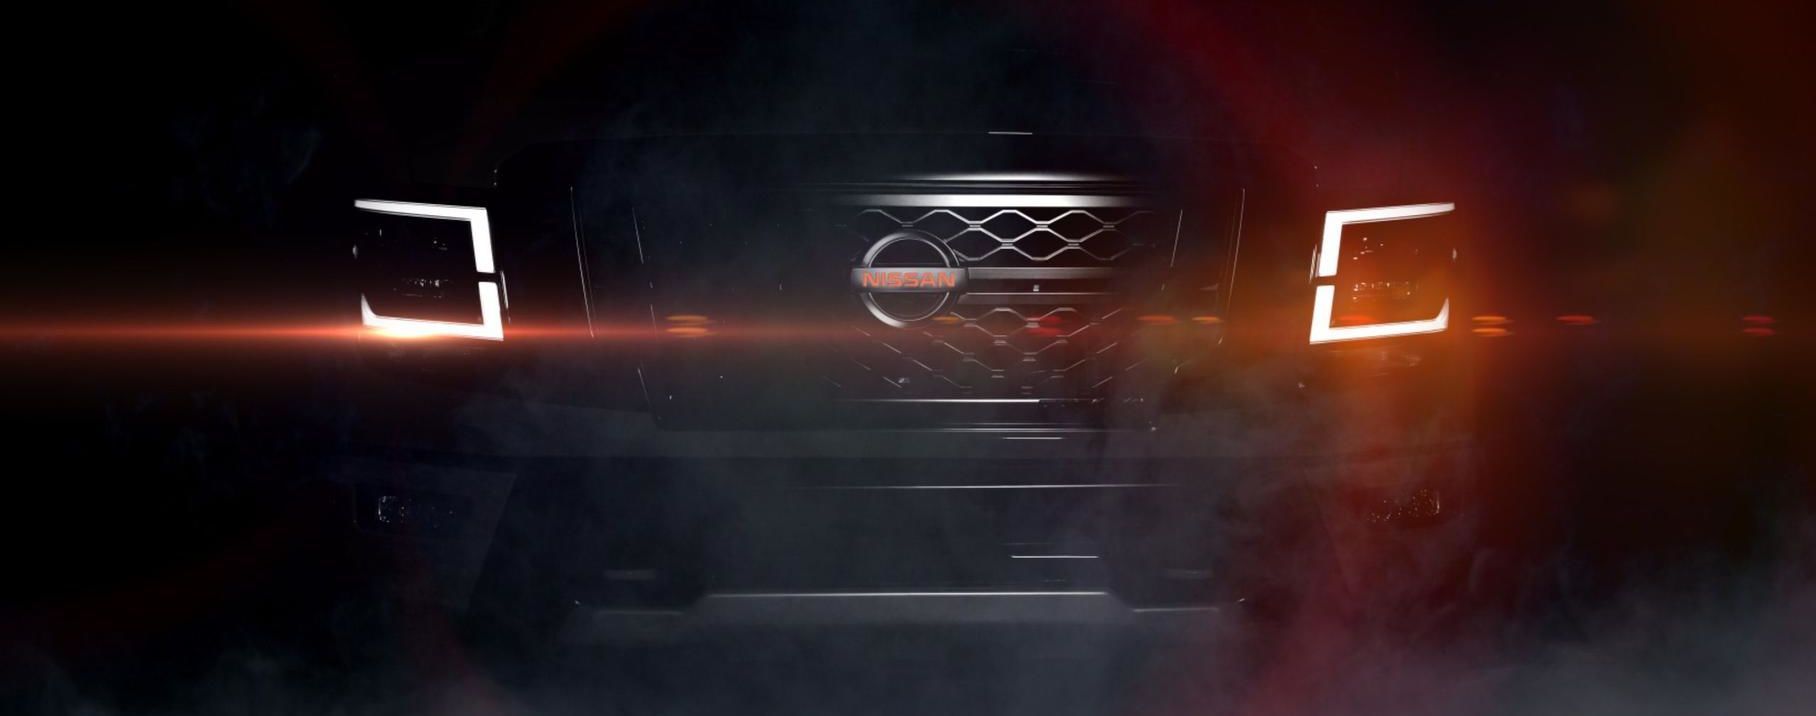 Nissan інтригує тизером нового пікапа Titan